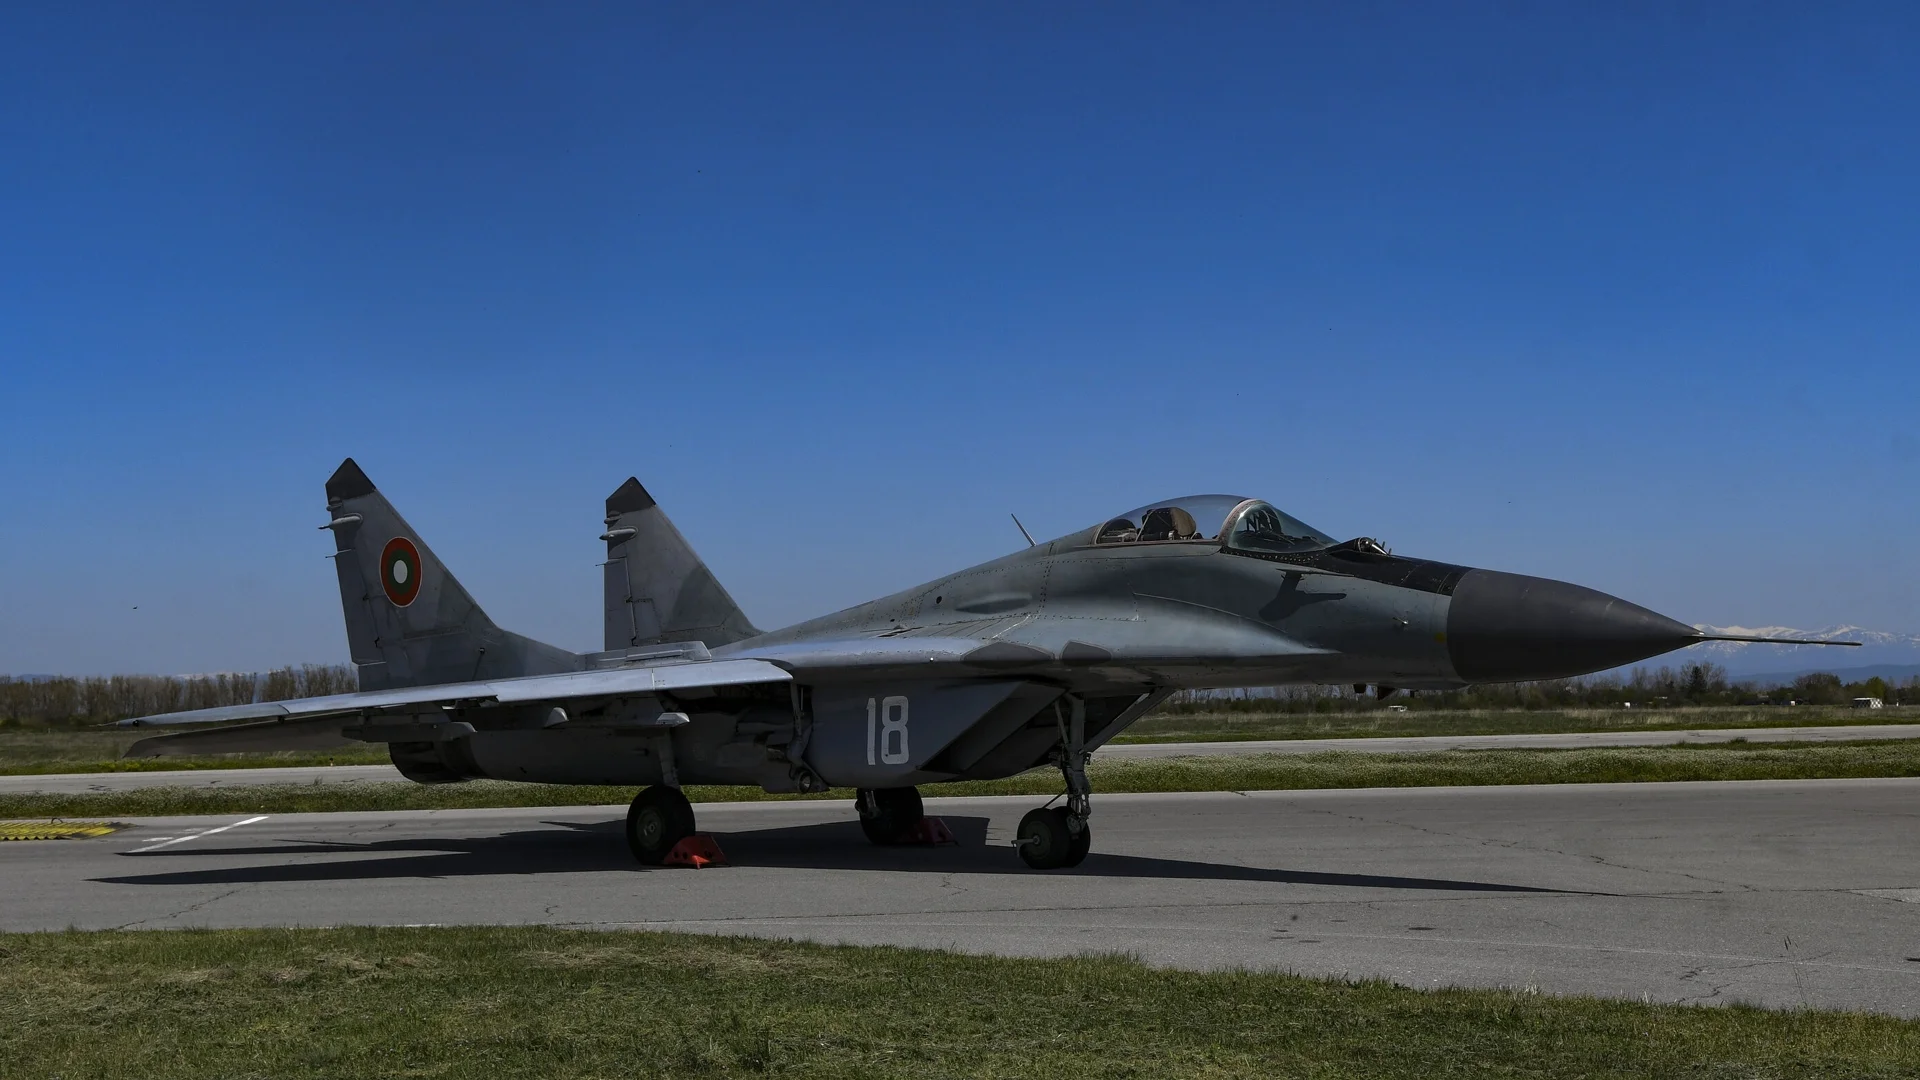 На 250 м височина с 600 км/ч: Изтребители МиГ-29 прелетяха над София